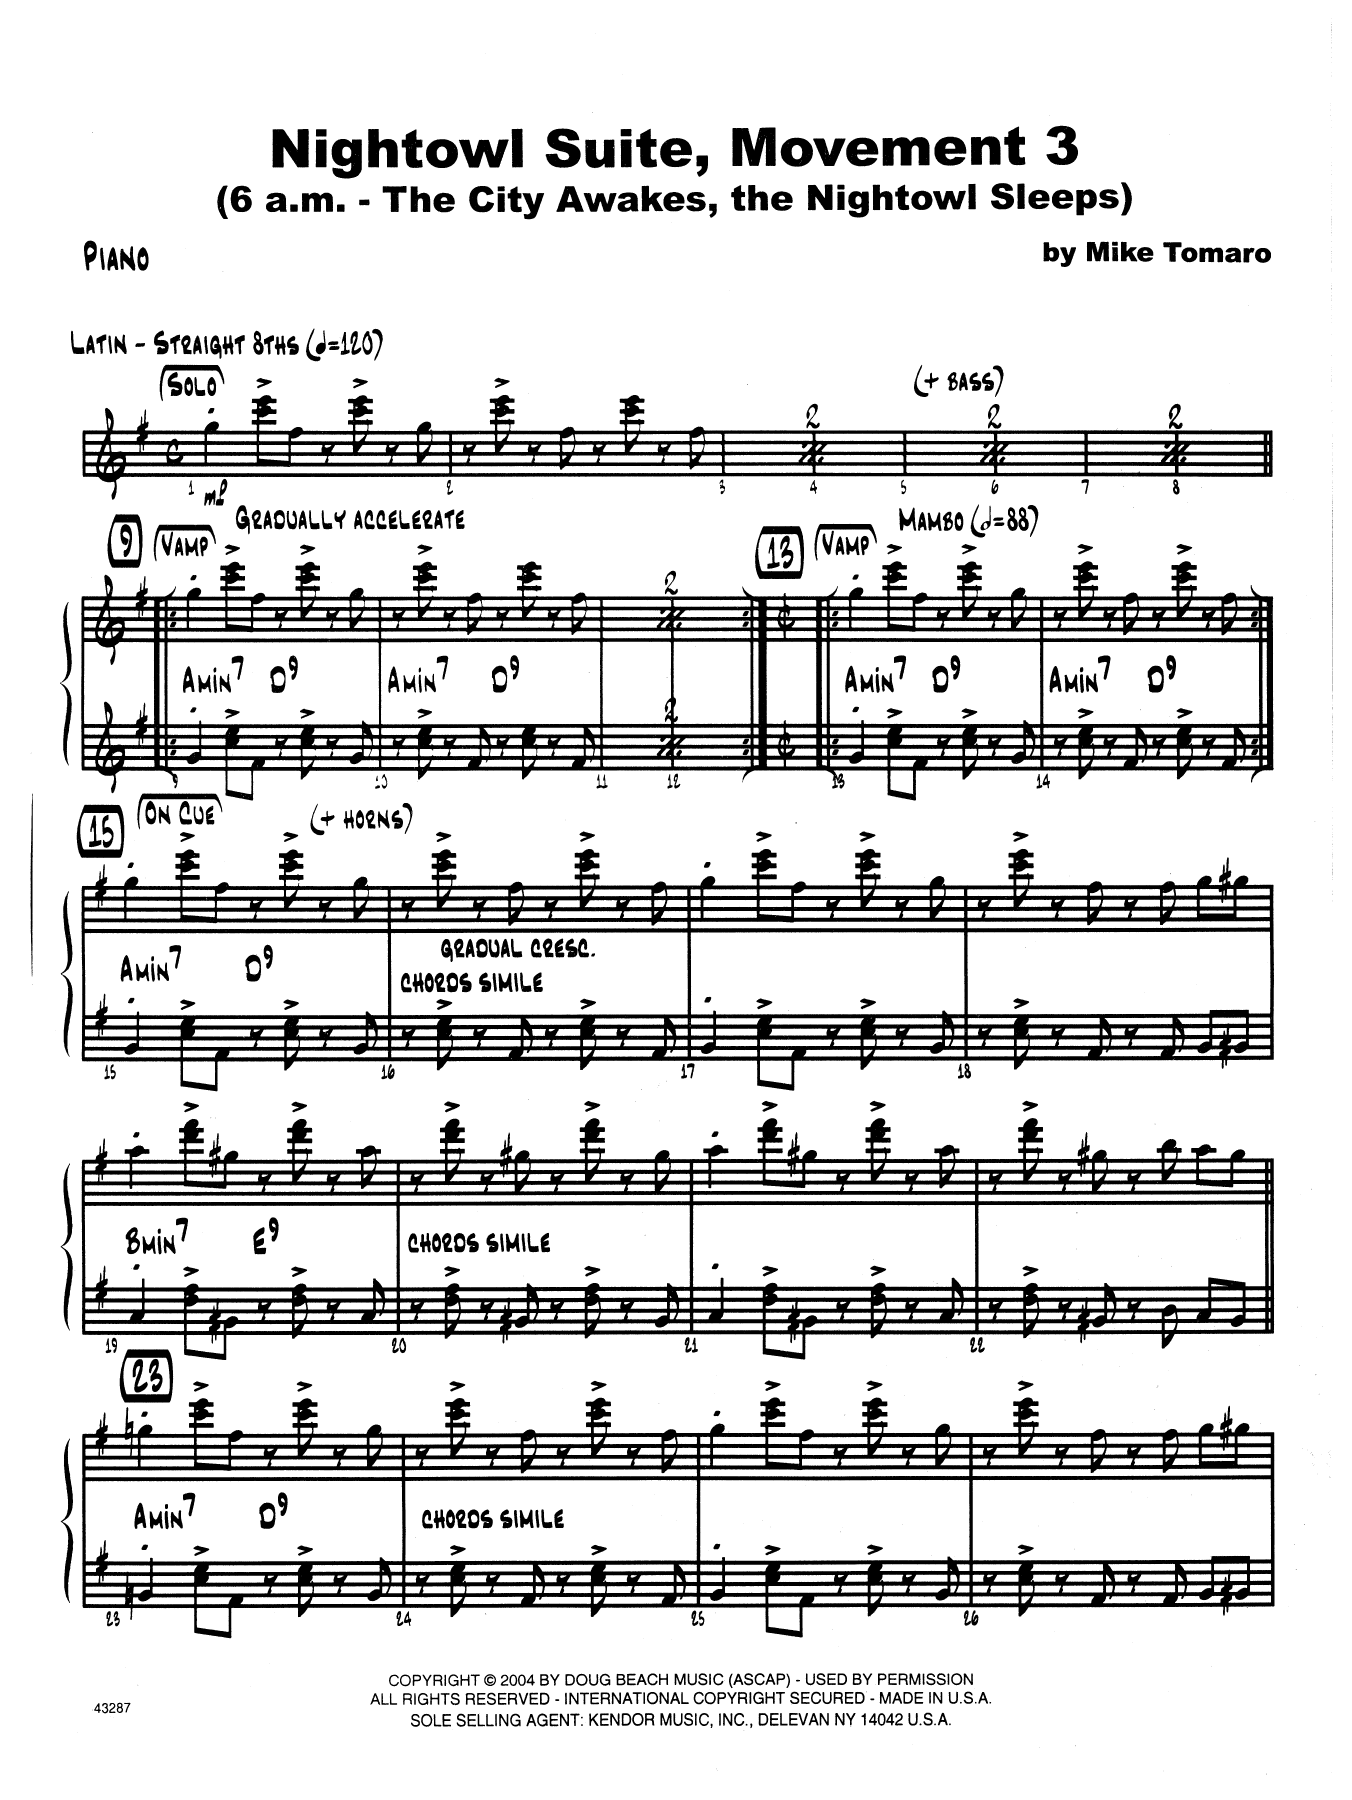 Nightowl Suite, Mvt. 3 - Piano (Jazz Ensemble) von Mike Tomaro